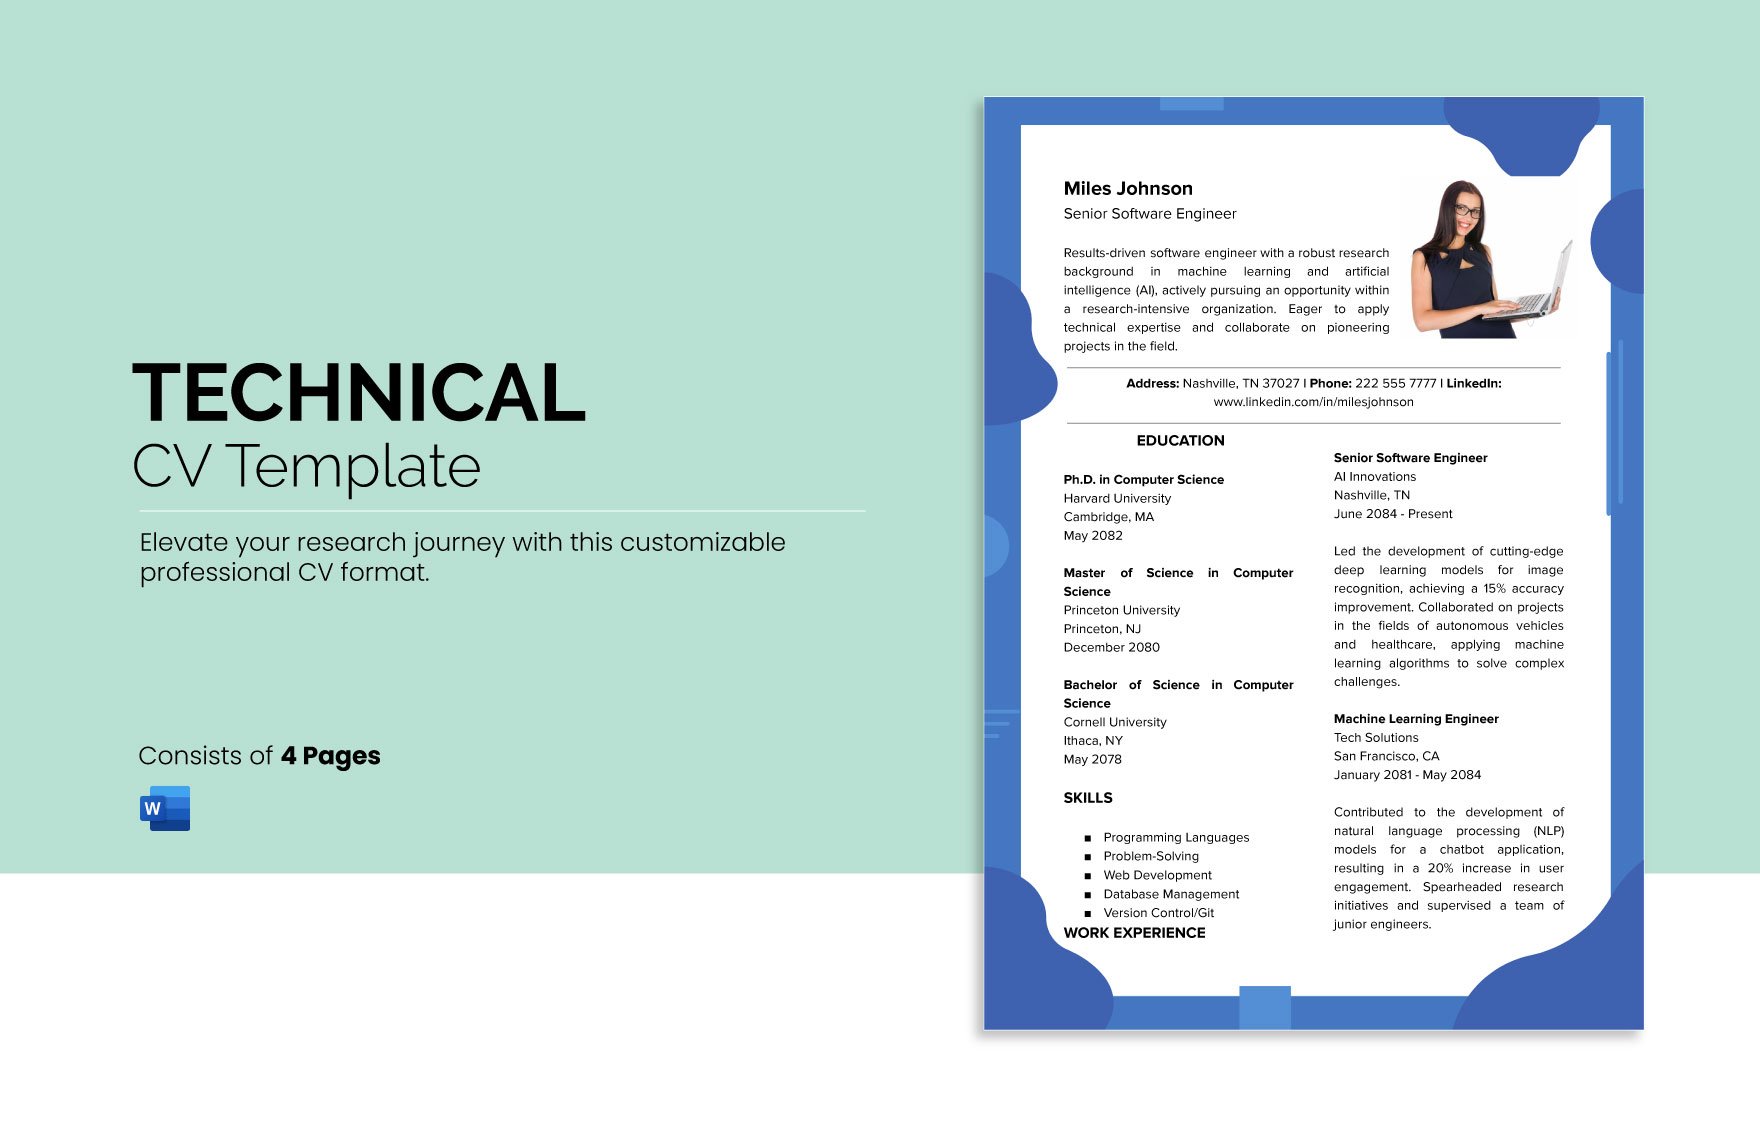 Technical CV Template 